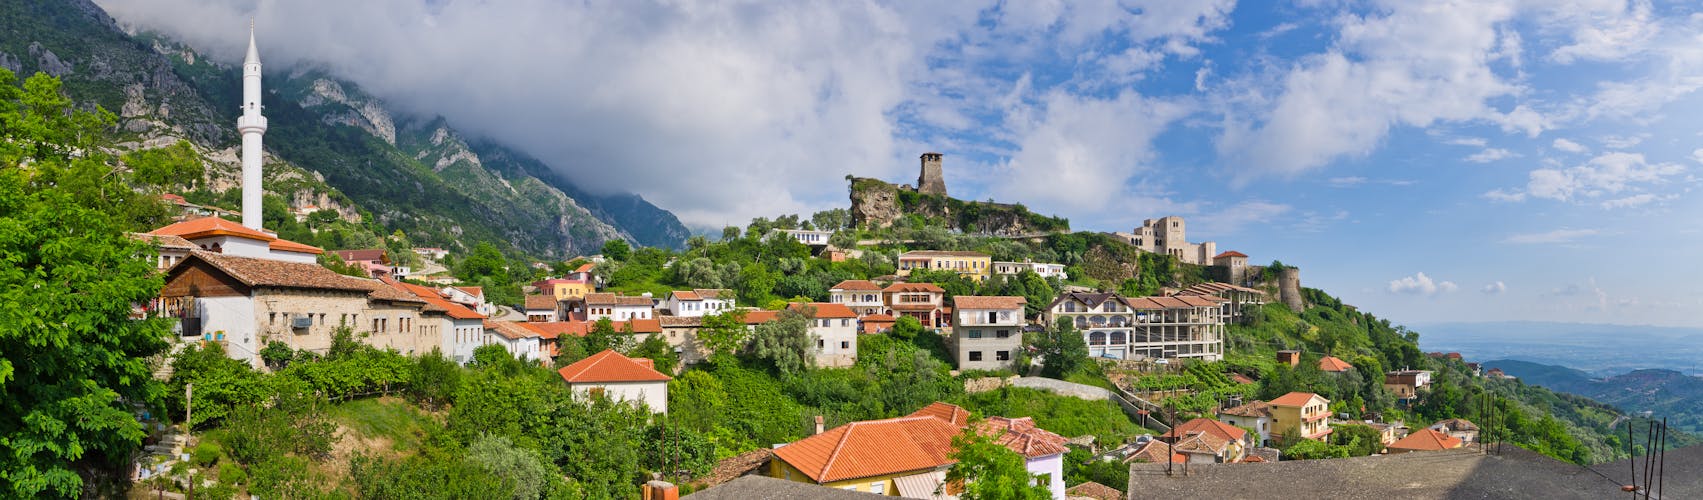 Scene with Kruja castle near Tirana in Albania.